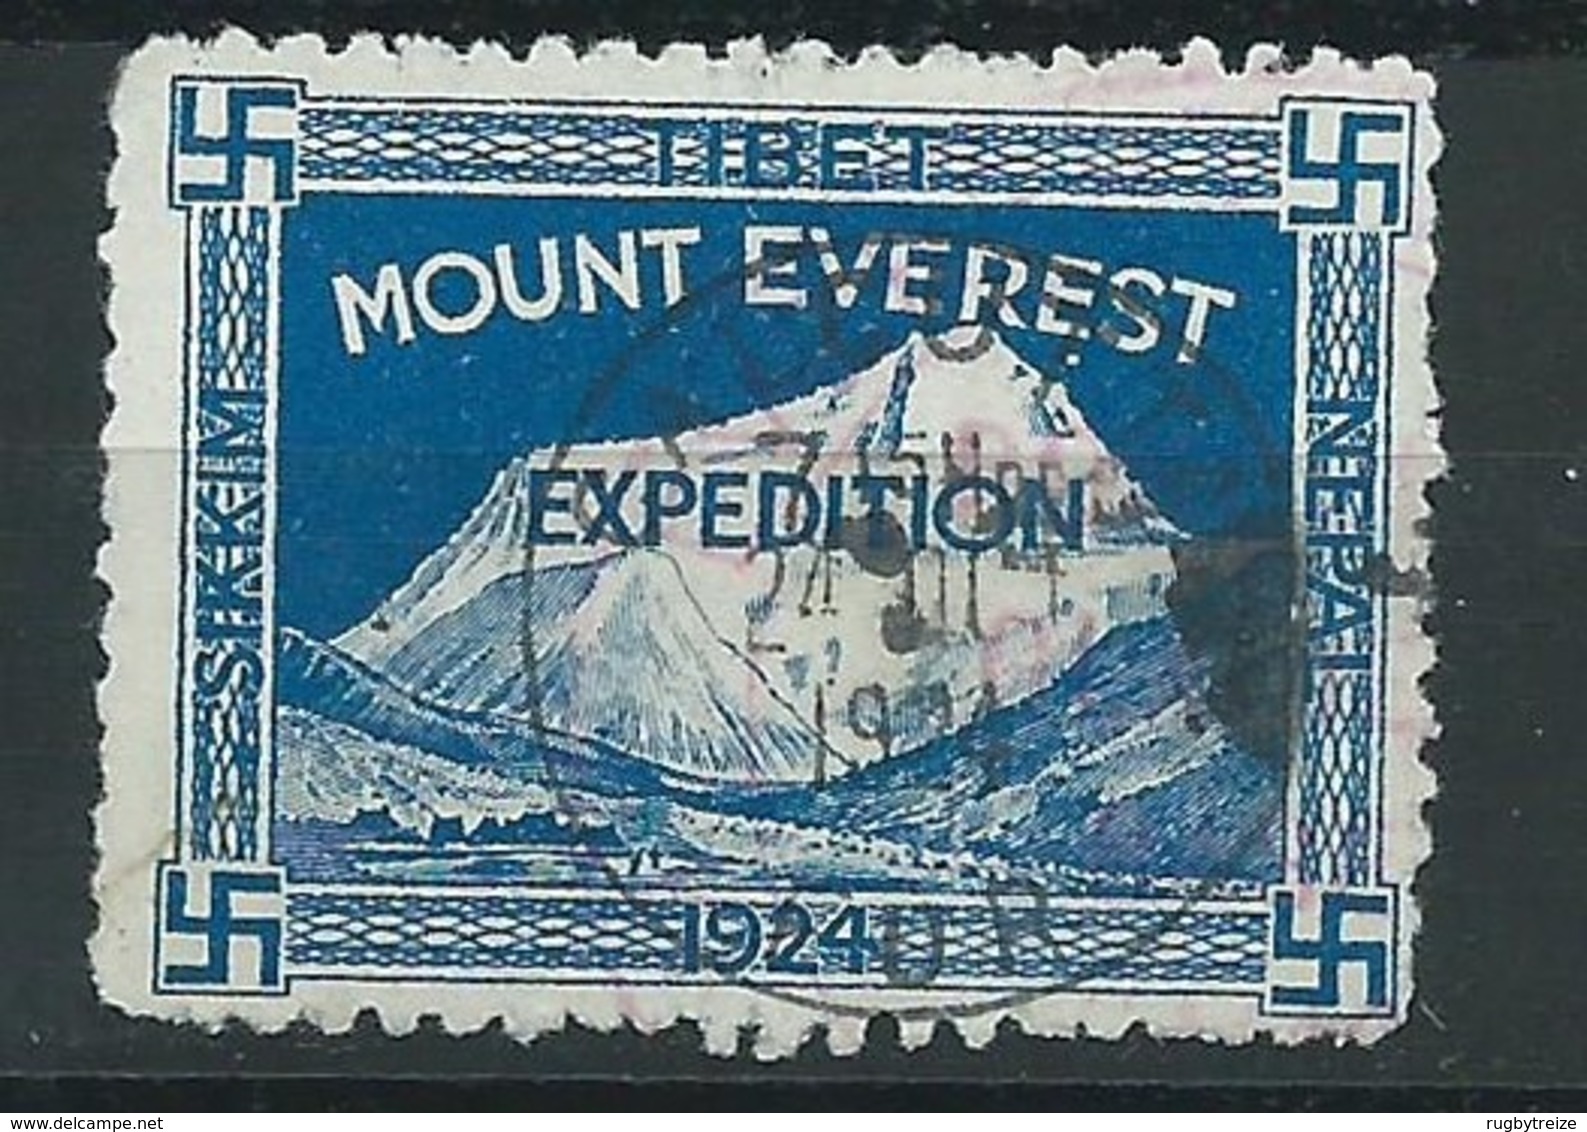 3184 - Timbre Vignette Mount Everest 1924 Tibet - Calcutta 1924 Expedetion Svastika - Erinnophilie